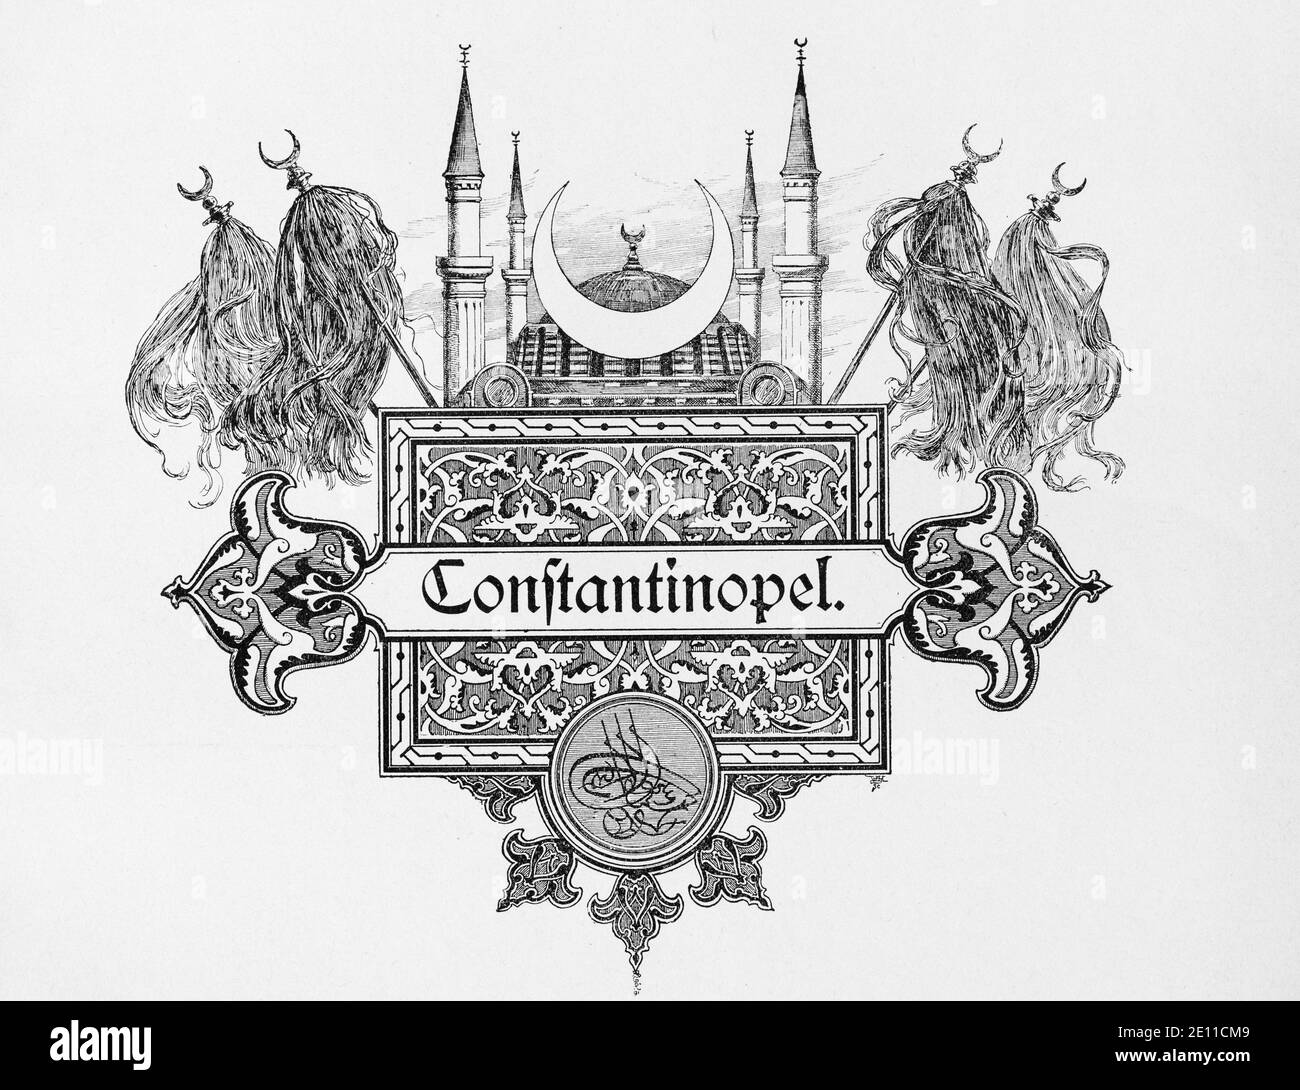 Disegno pittografico per la capitale Constantinopel, Turchia, illustrazioni da 'Die Hauptstädte der Welt', Brelasu circa 1897 Foto Stock